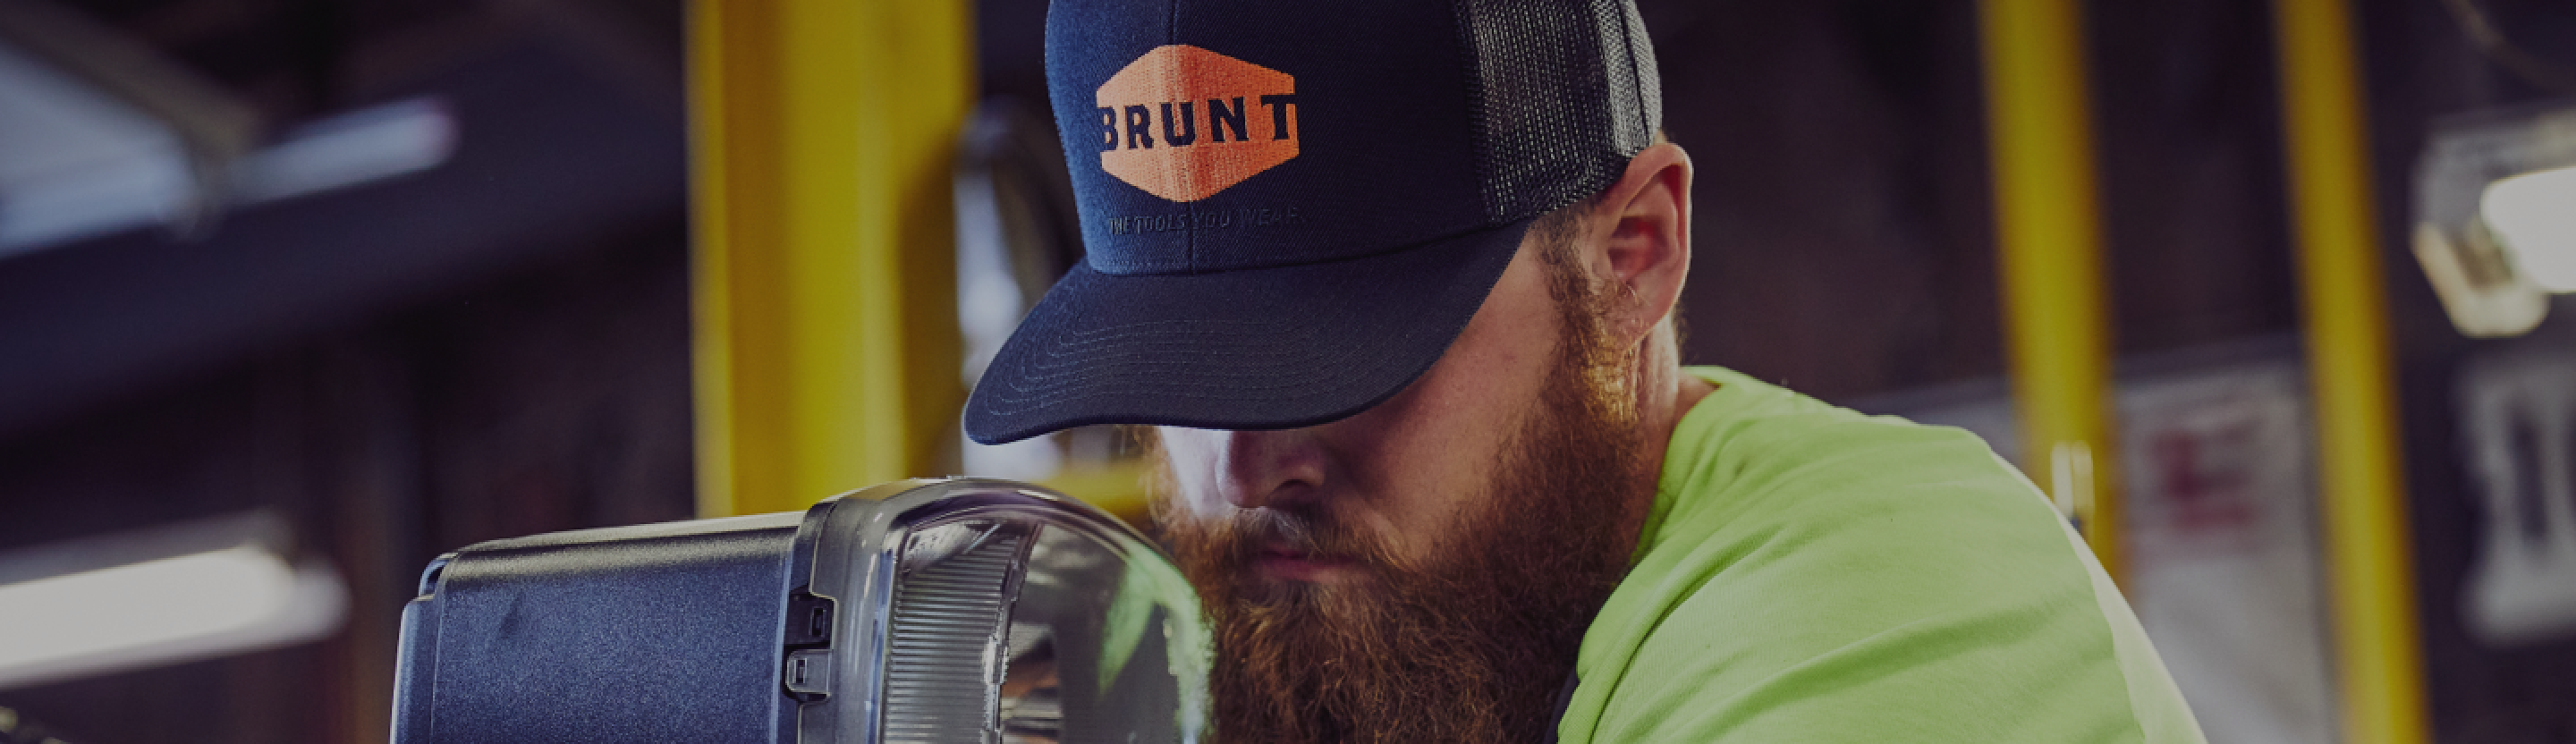 Flat Brim Work Hat with BRUNT logo